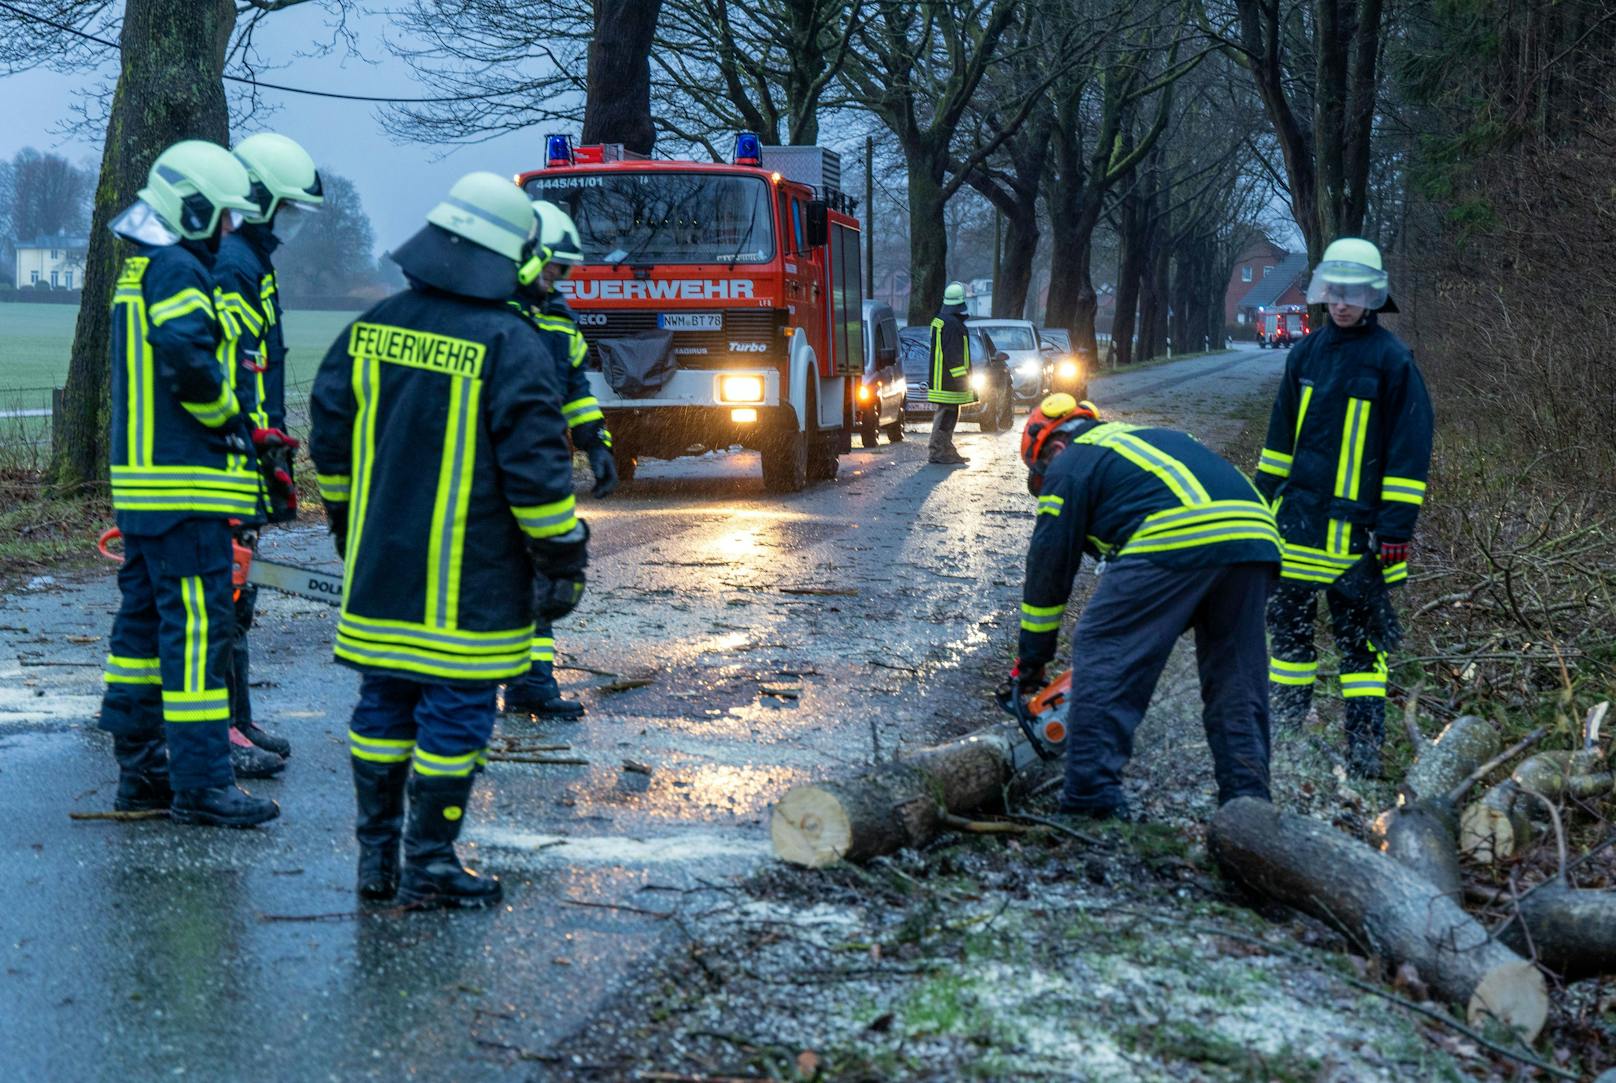 Die Feuerwehr hat alle Hände voll zu tun. Wegen umgestürzter Bäume, Verkehrsunfälle und anderer Zwischenfälle müssen die Helfer zu zahlreichen Einsätzen ausrücken – wie hier in Mecklenburg-Vorpommern...